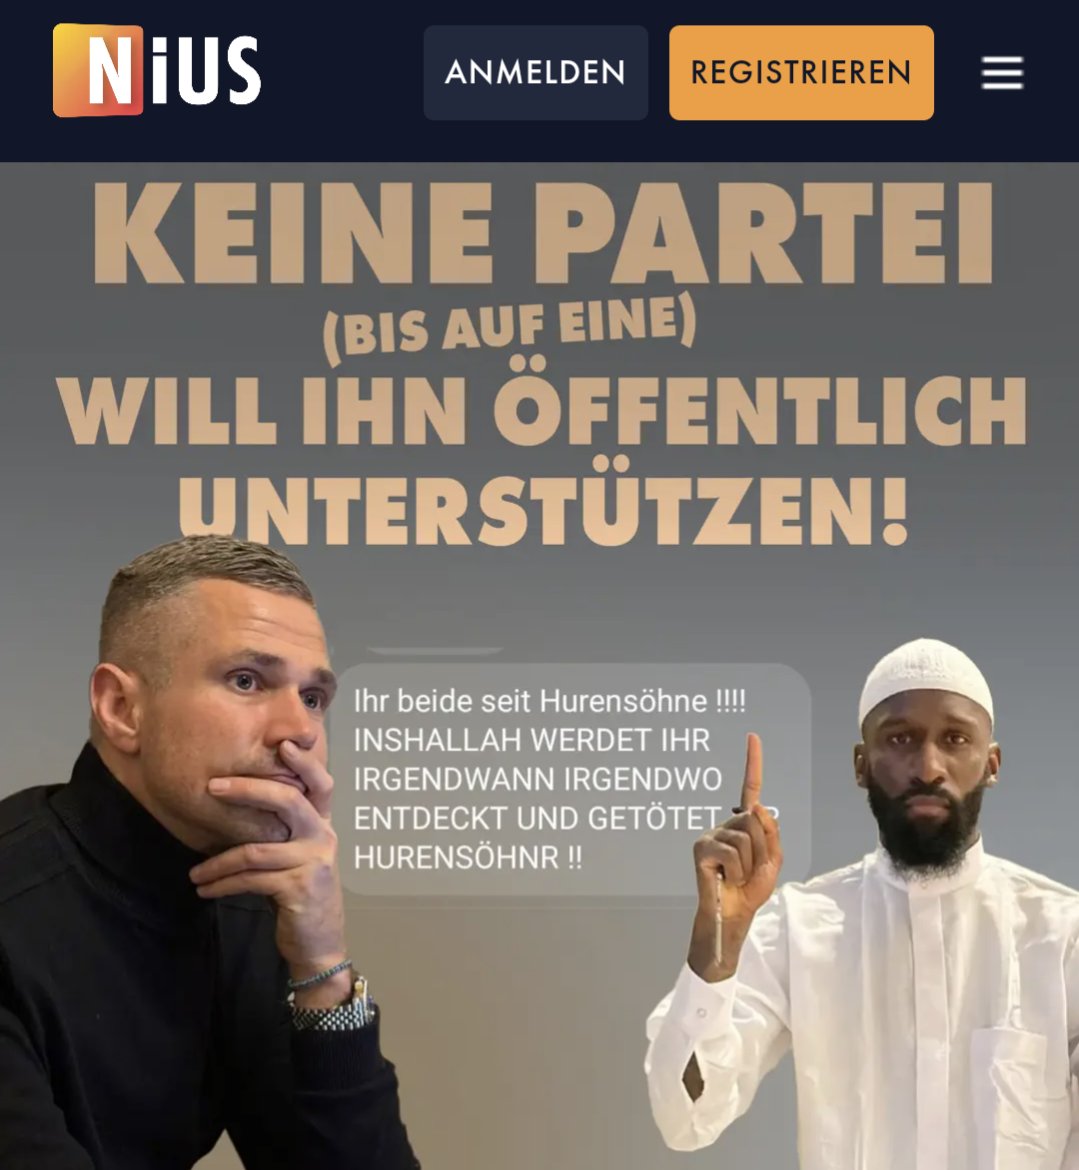 Der FDP-Spitzenkandidat (MVP) bekommt Morddrohungen von Islamisten, weil er Antonio Rüdiger kritisiert hat, aber so gut wie niemand will ihm öffentlich beispringen. Ganz anders, als wenn Bauern Habeck auspfeifen... nius.de/gesellschaft/v…